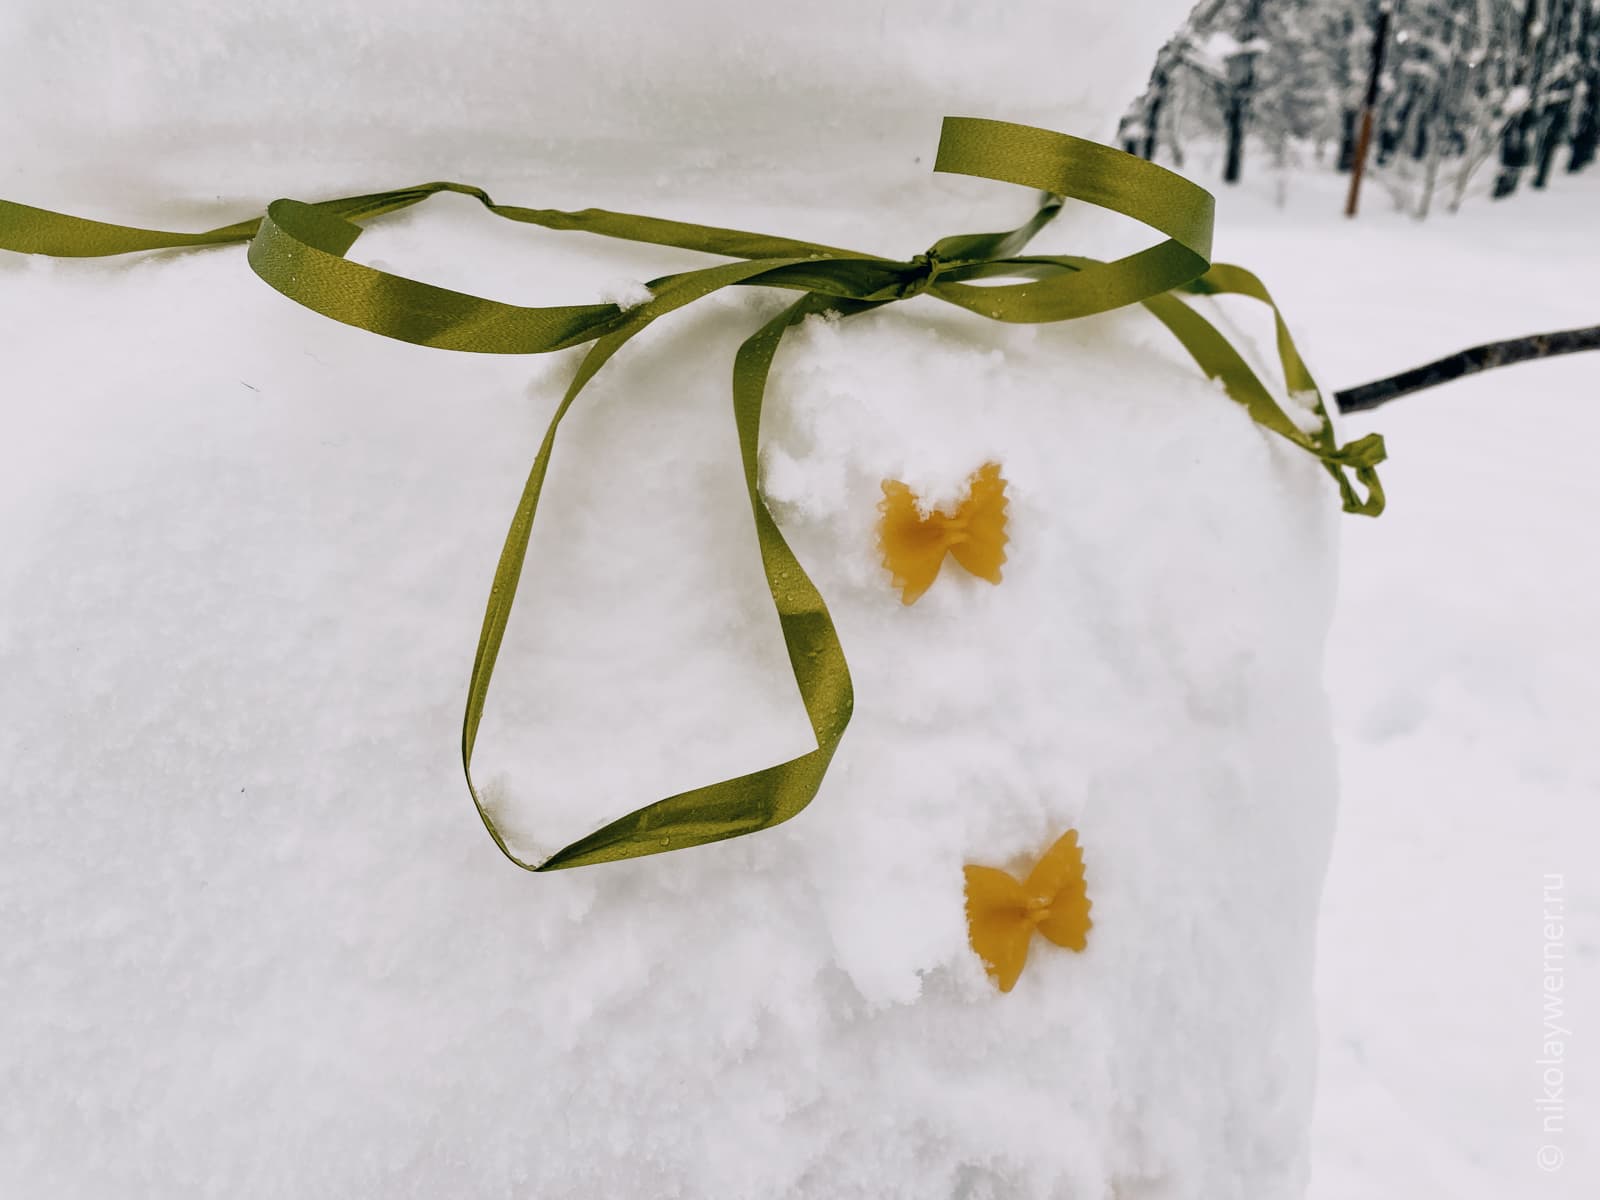 Фрагмент снеговика. Шея подвязана зеленой ленточкой, на груди красуются пуговицы их макаронин-бантиков